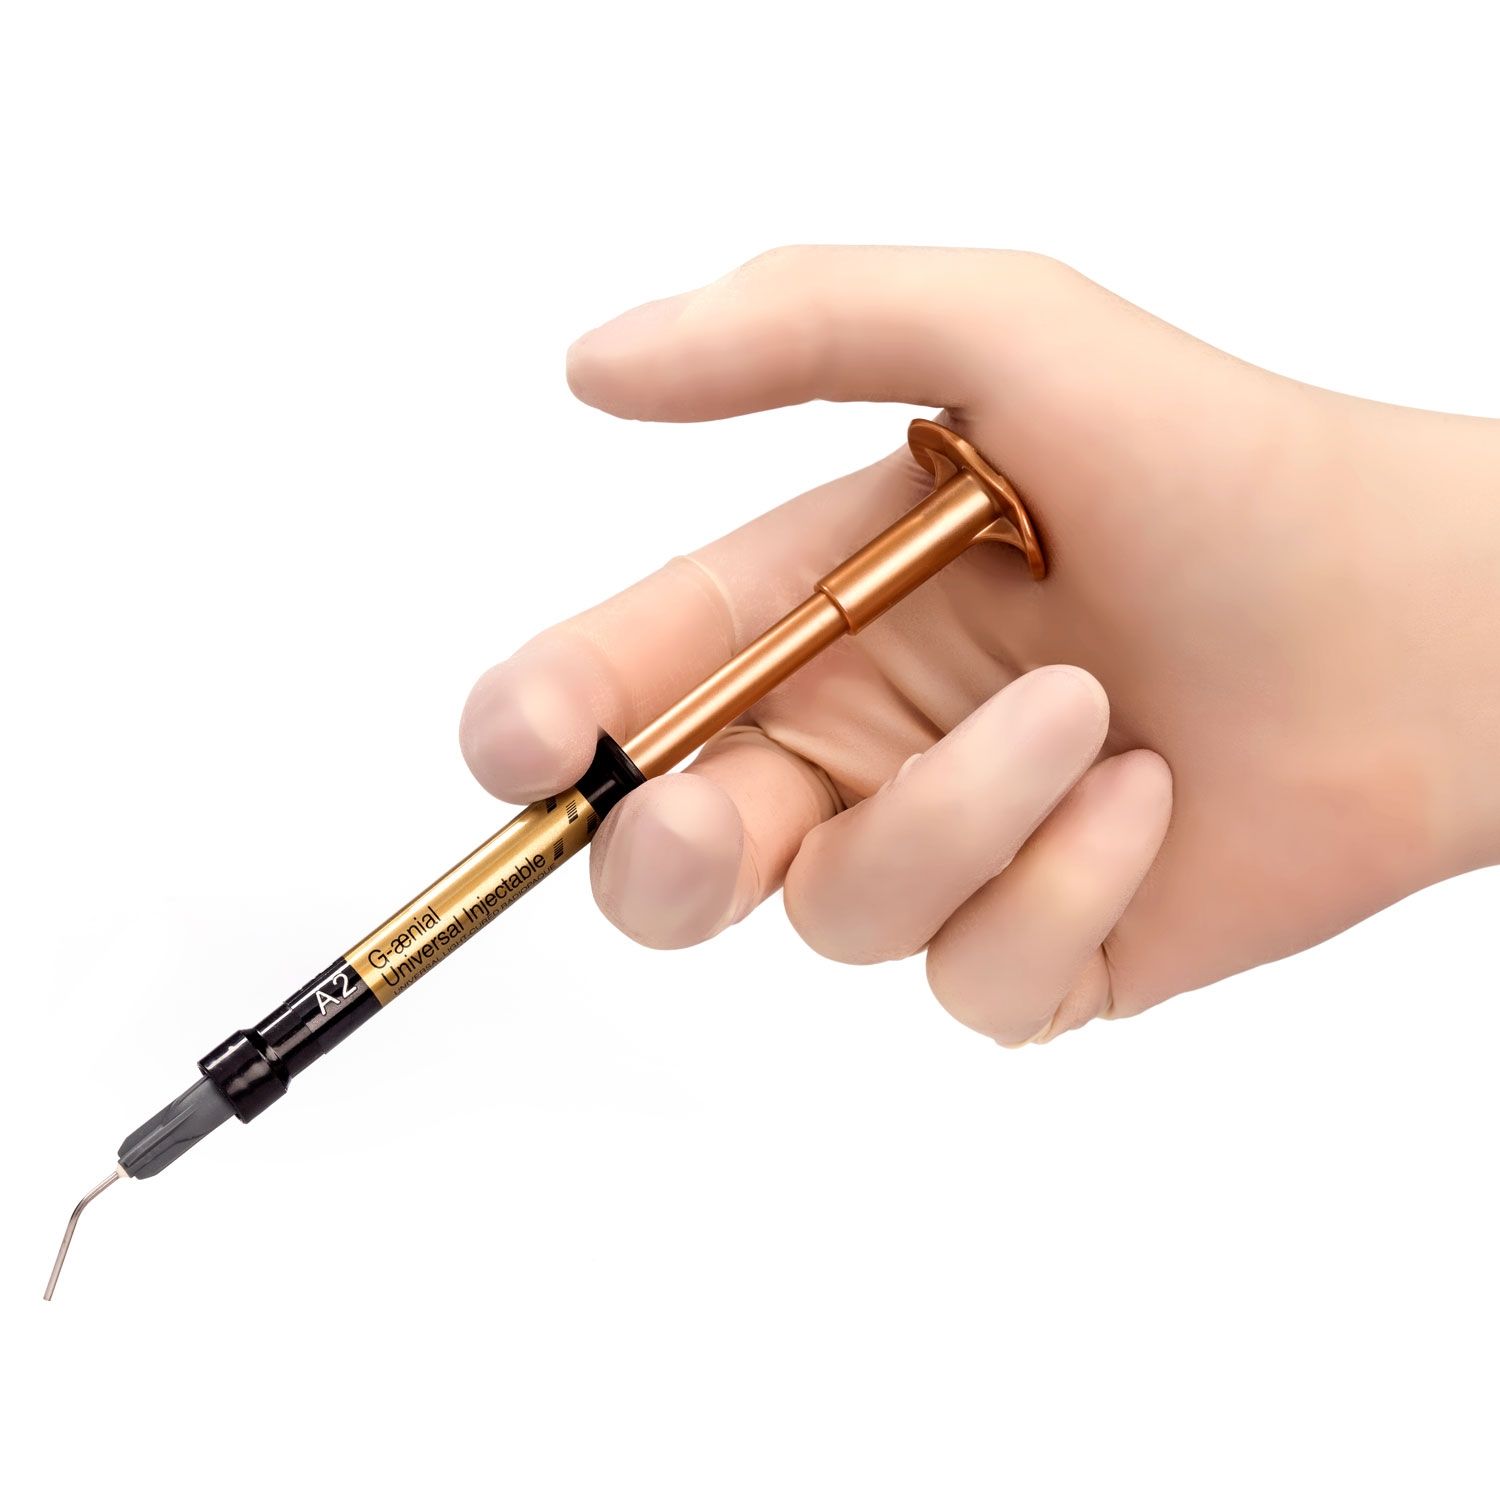 参比制剂,进口原料药,医药原料药 G-aenial Universal Injectable: 1ml Syringe - Shade BW